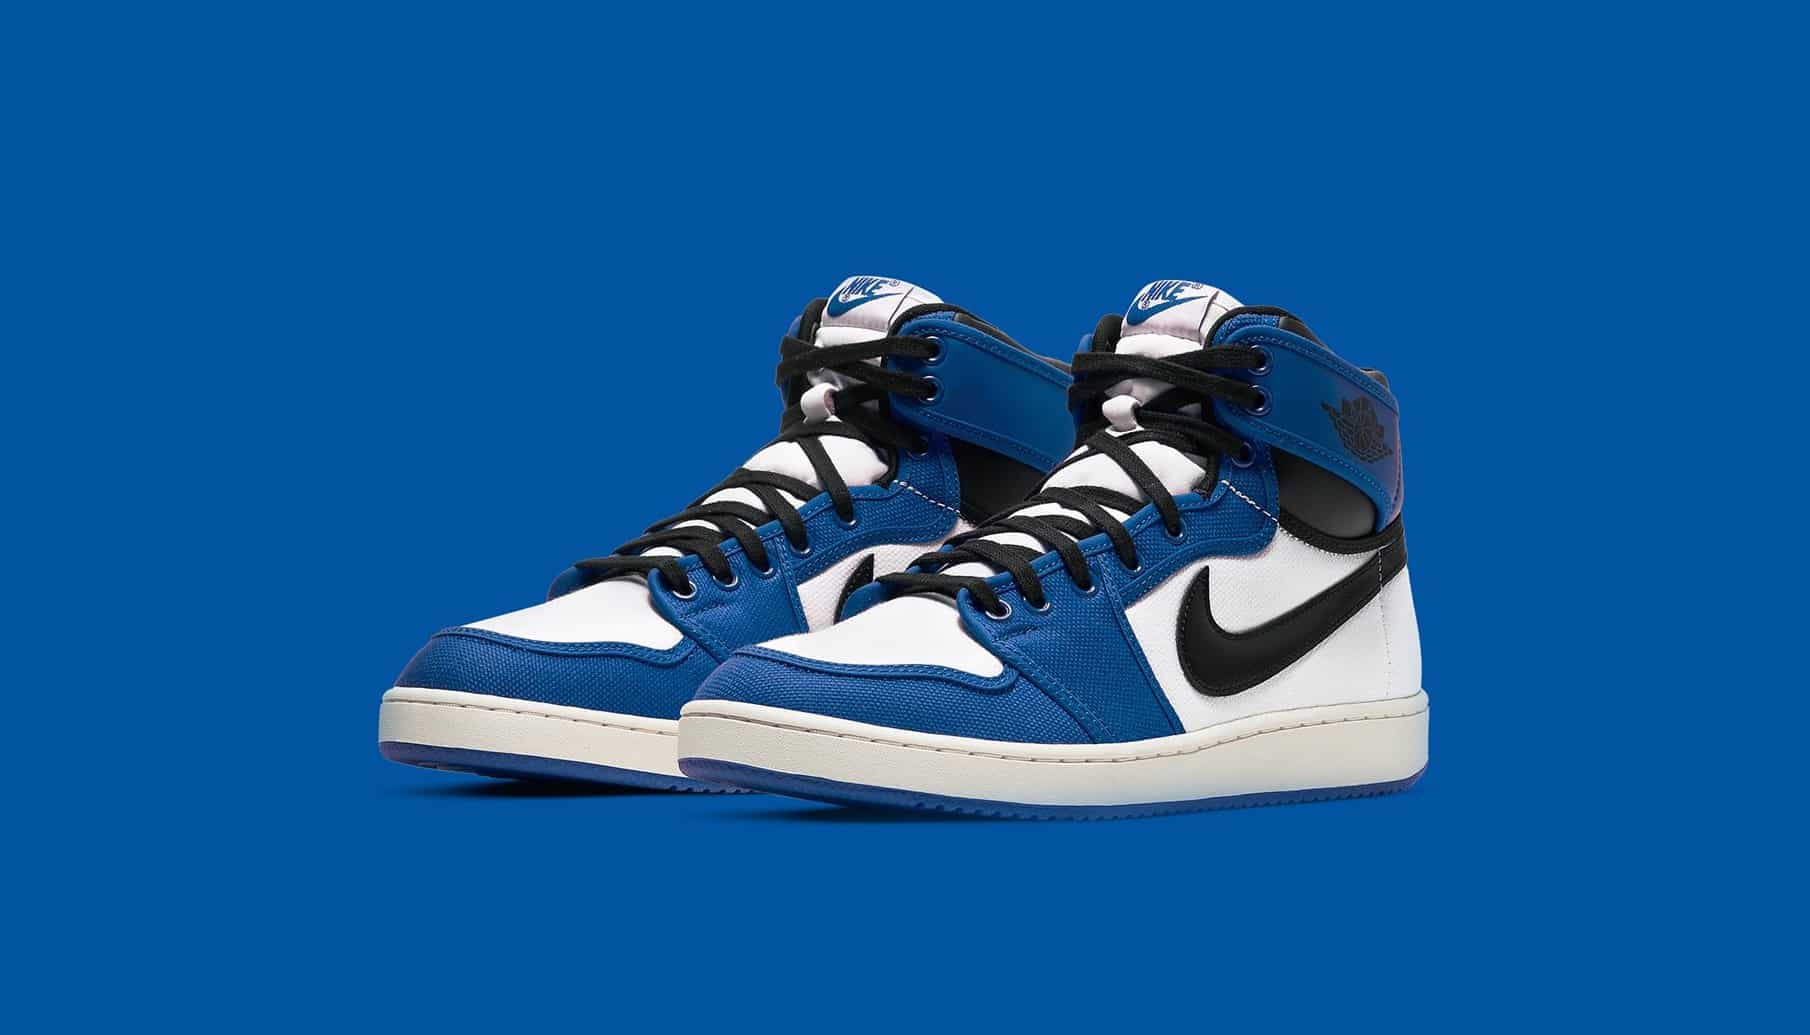 Une Air Jordan 1 KO "Storm Blue" à l'horizon - Le Site de la Sneaker